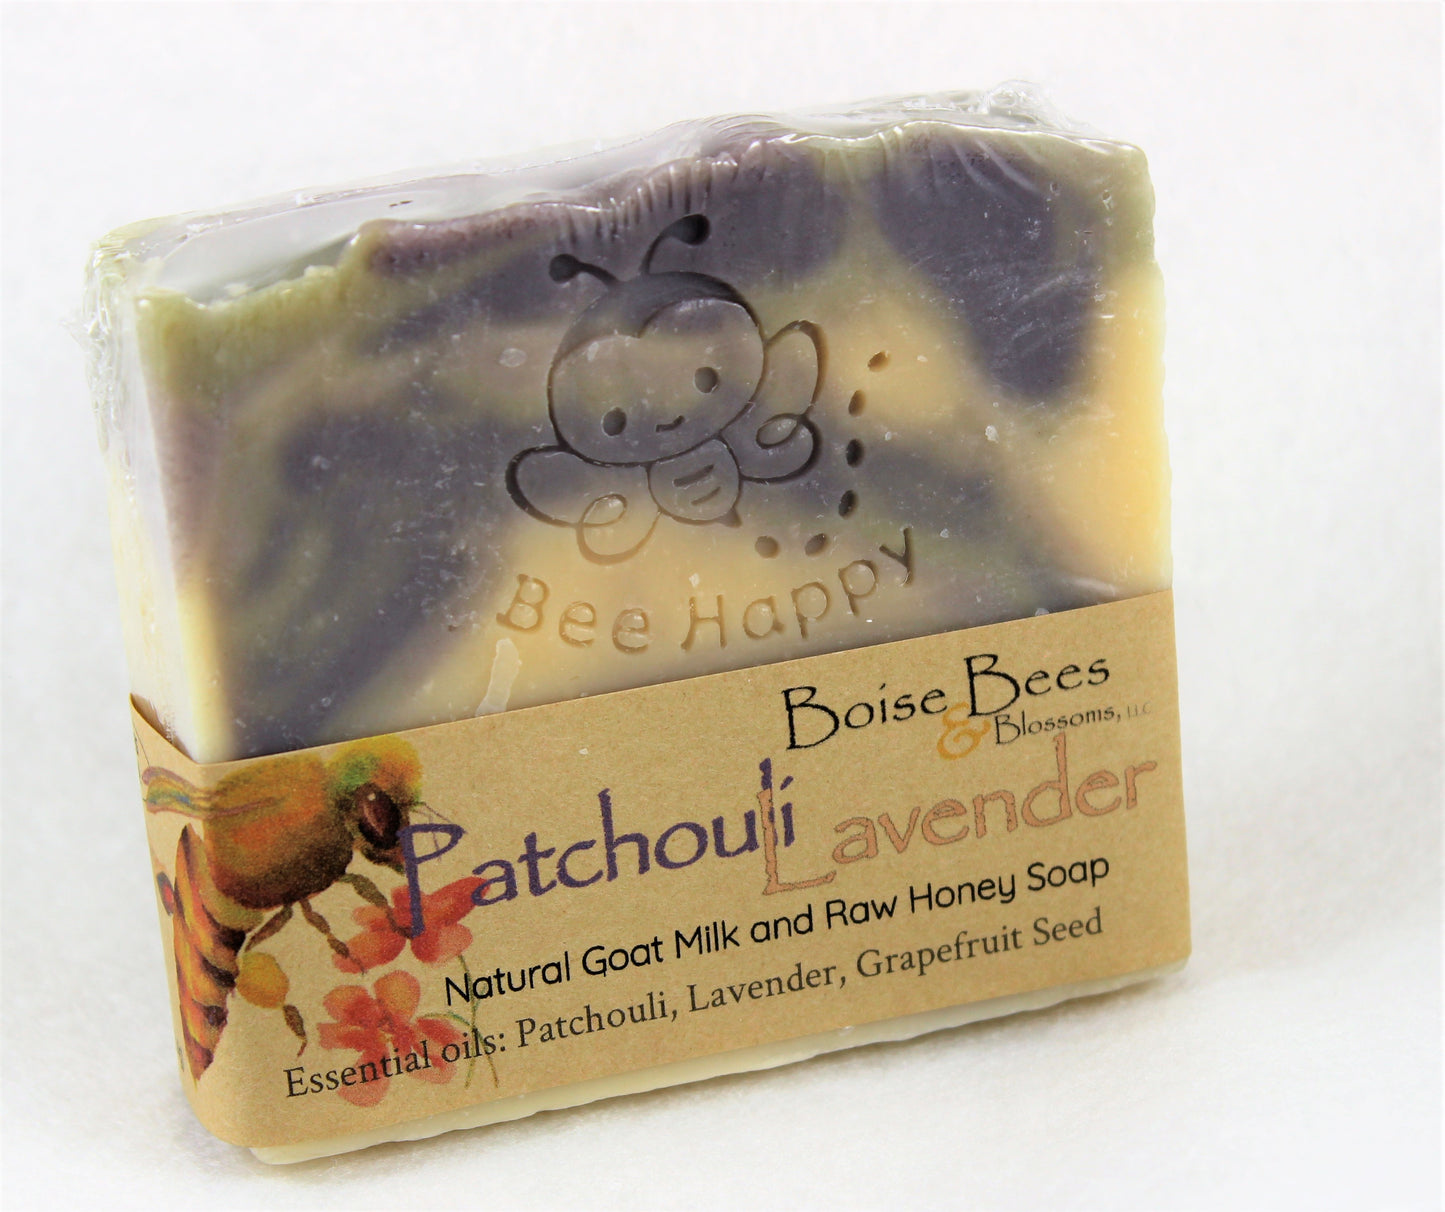 Patchouli Lavender Artisan Soap